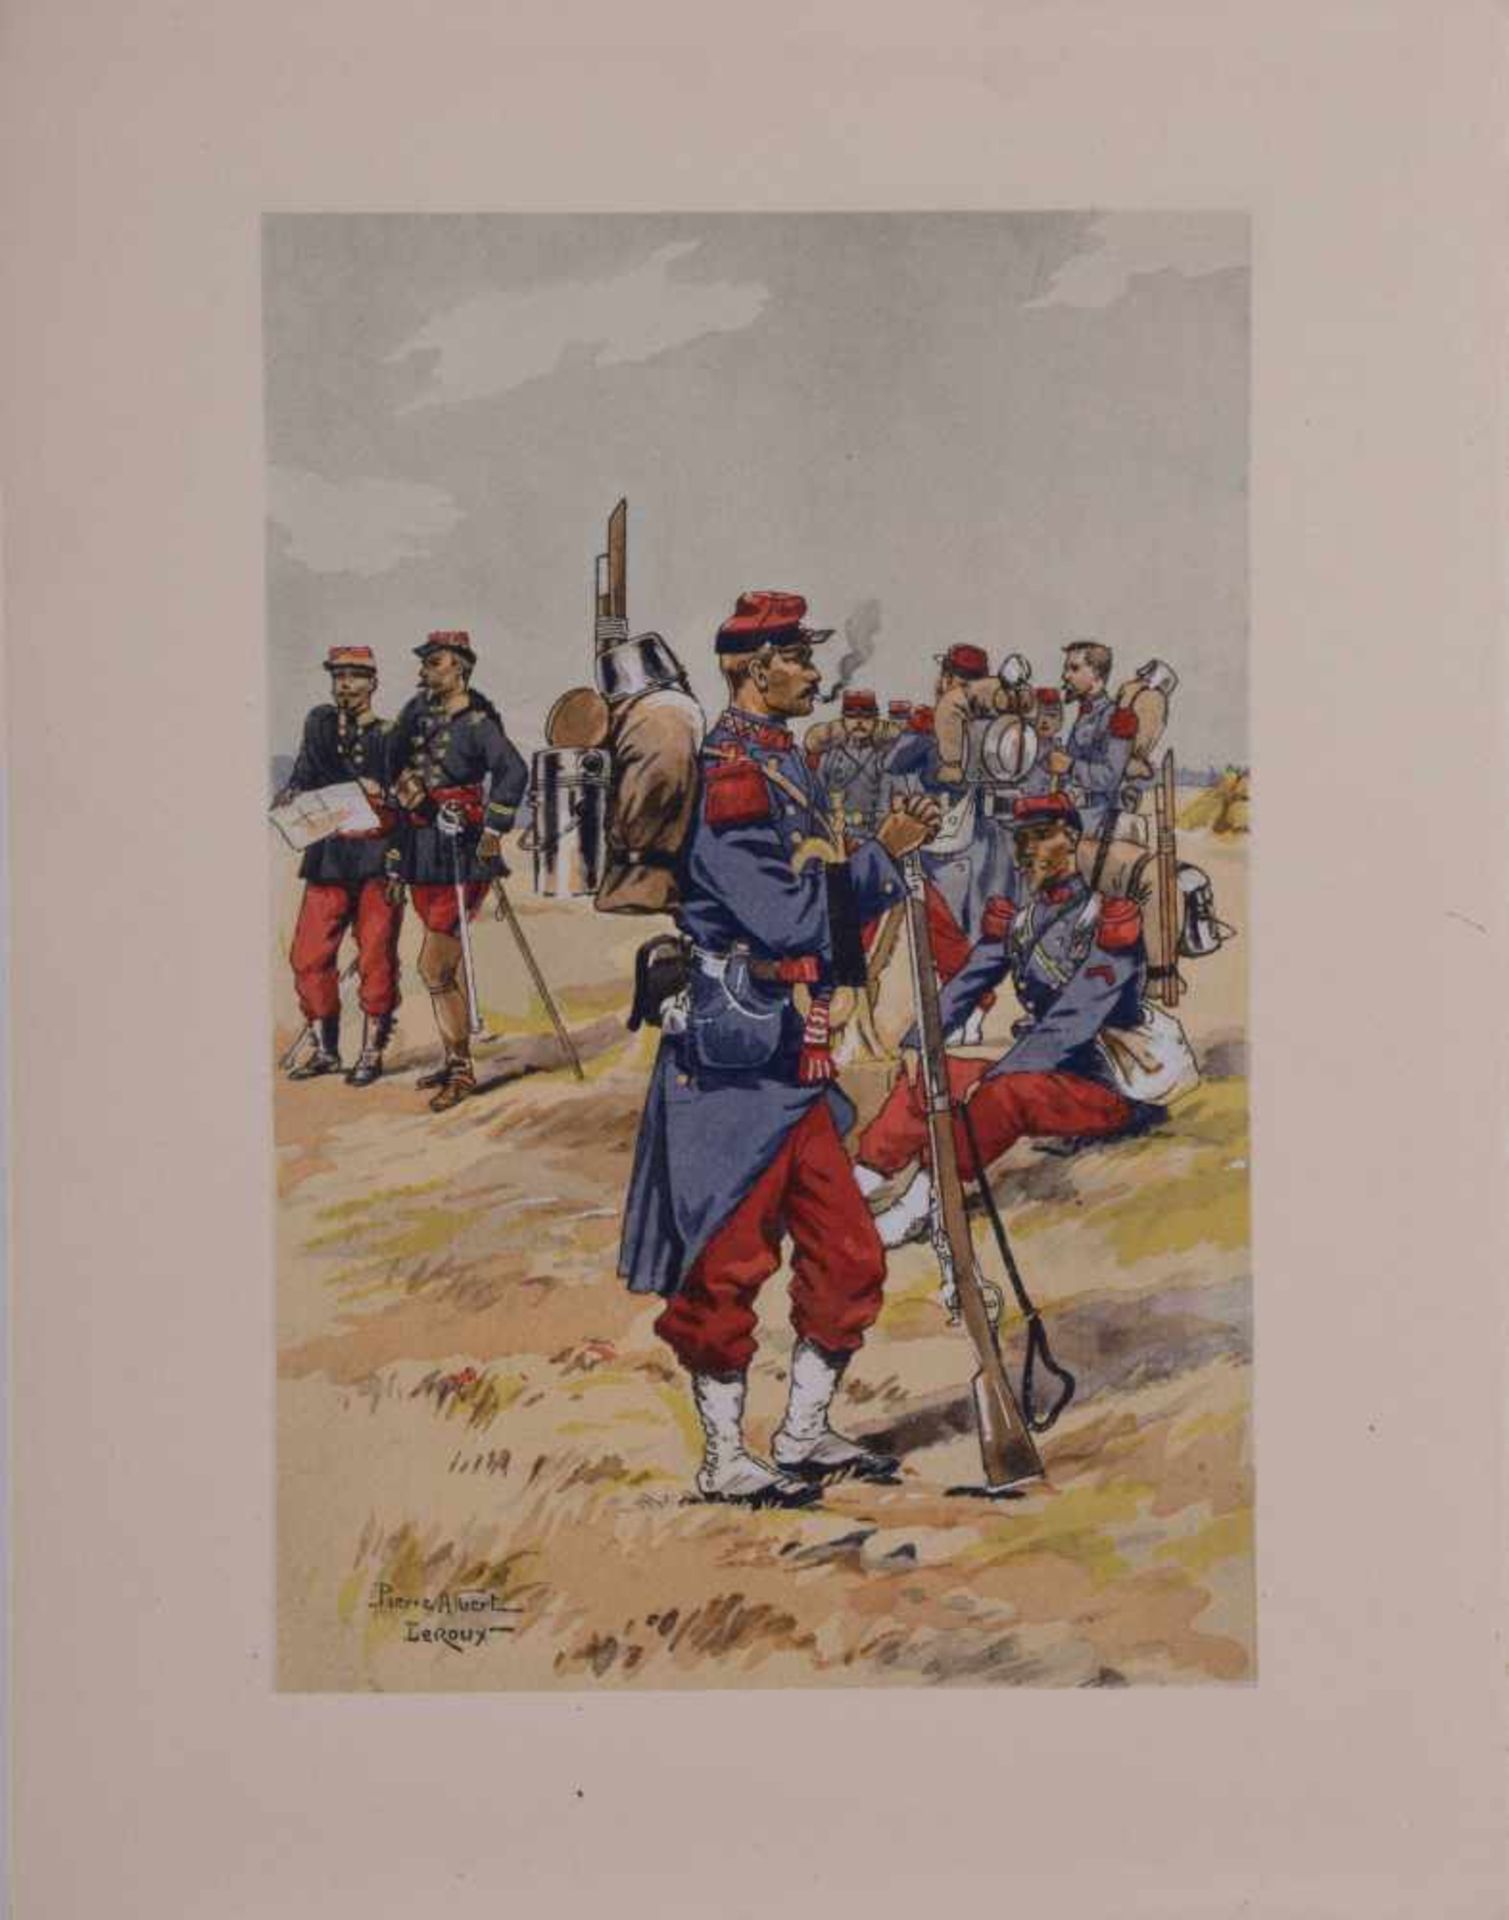 Pierre Albert LEROUX (1890-1959) "Infanterie" Zeichnung-Aquarell, weißgehöht, Bütten, 24,7 cm x 16,3 - Bild 2 aus 6